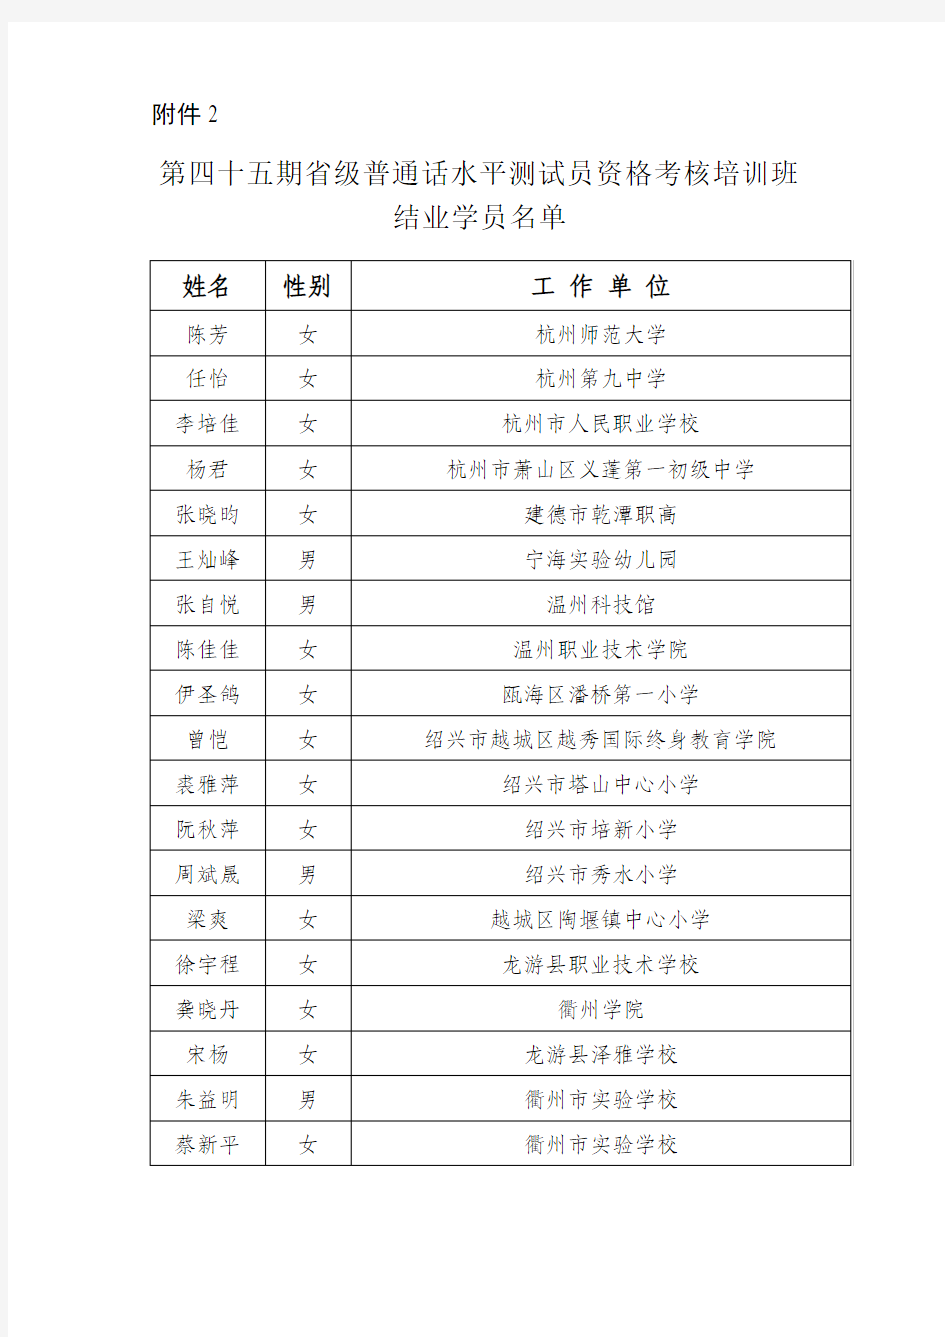 浙江省第四十五期省级普通话水平测试员资格考核培训班结业学员名单